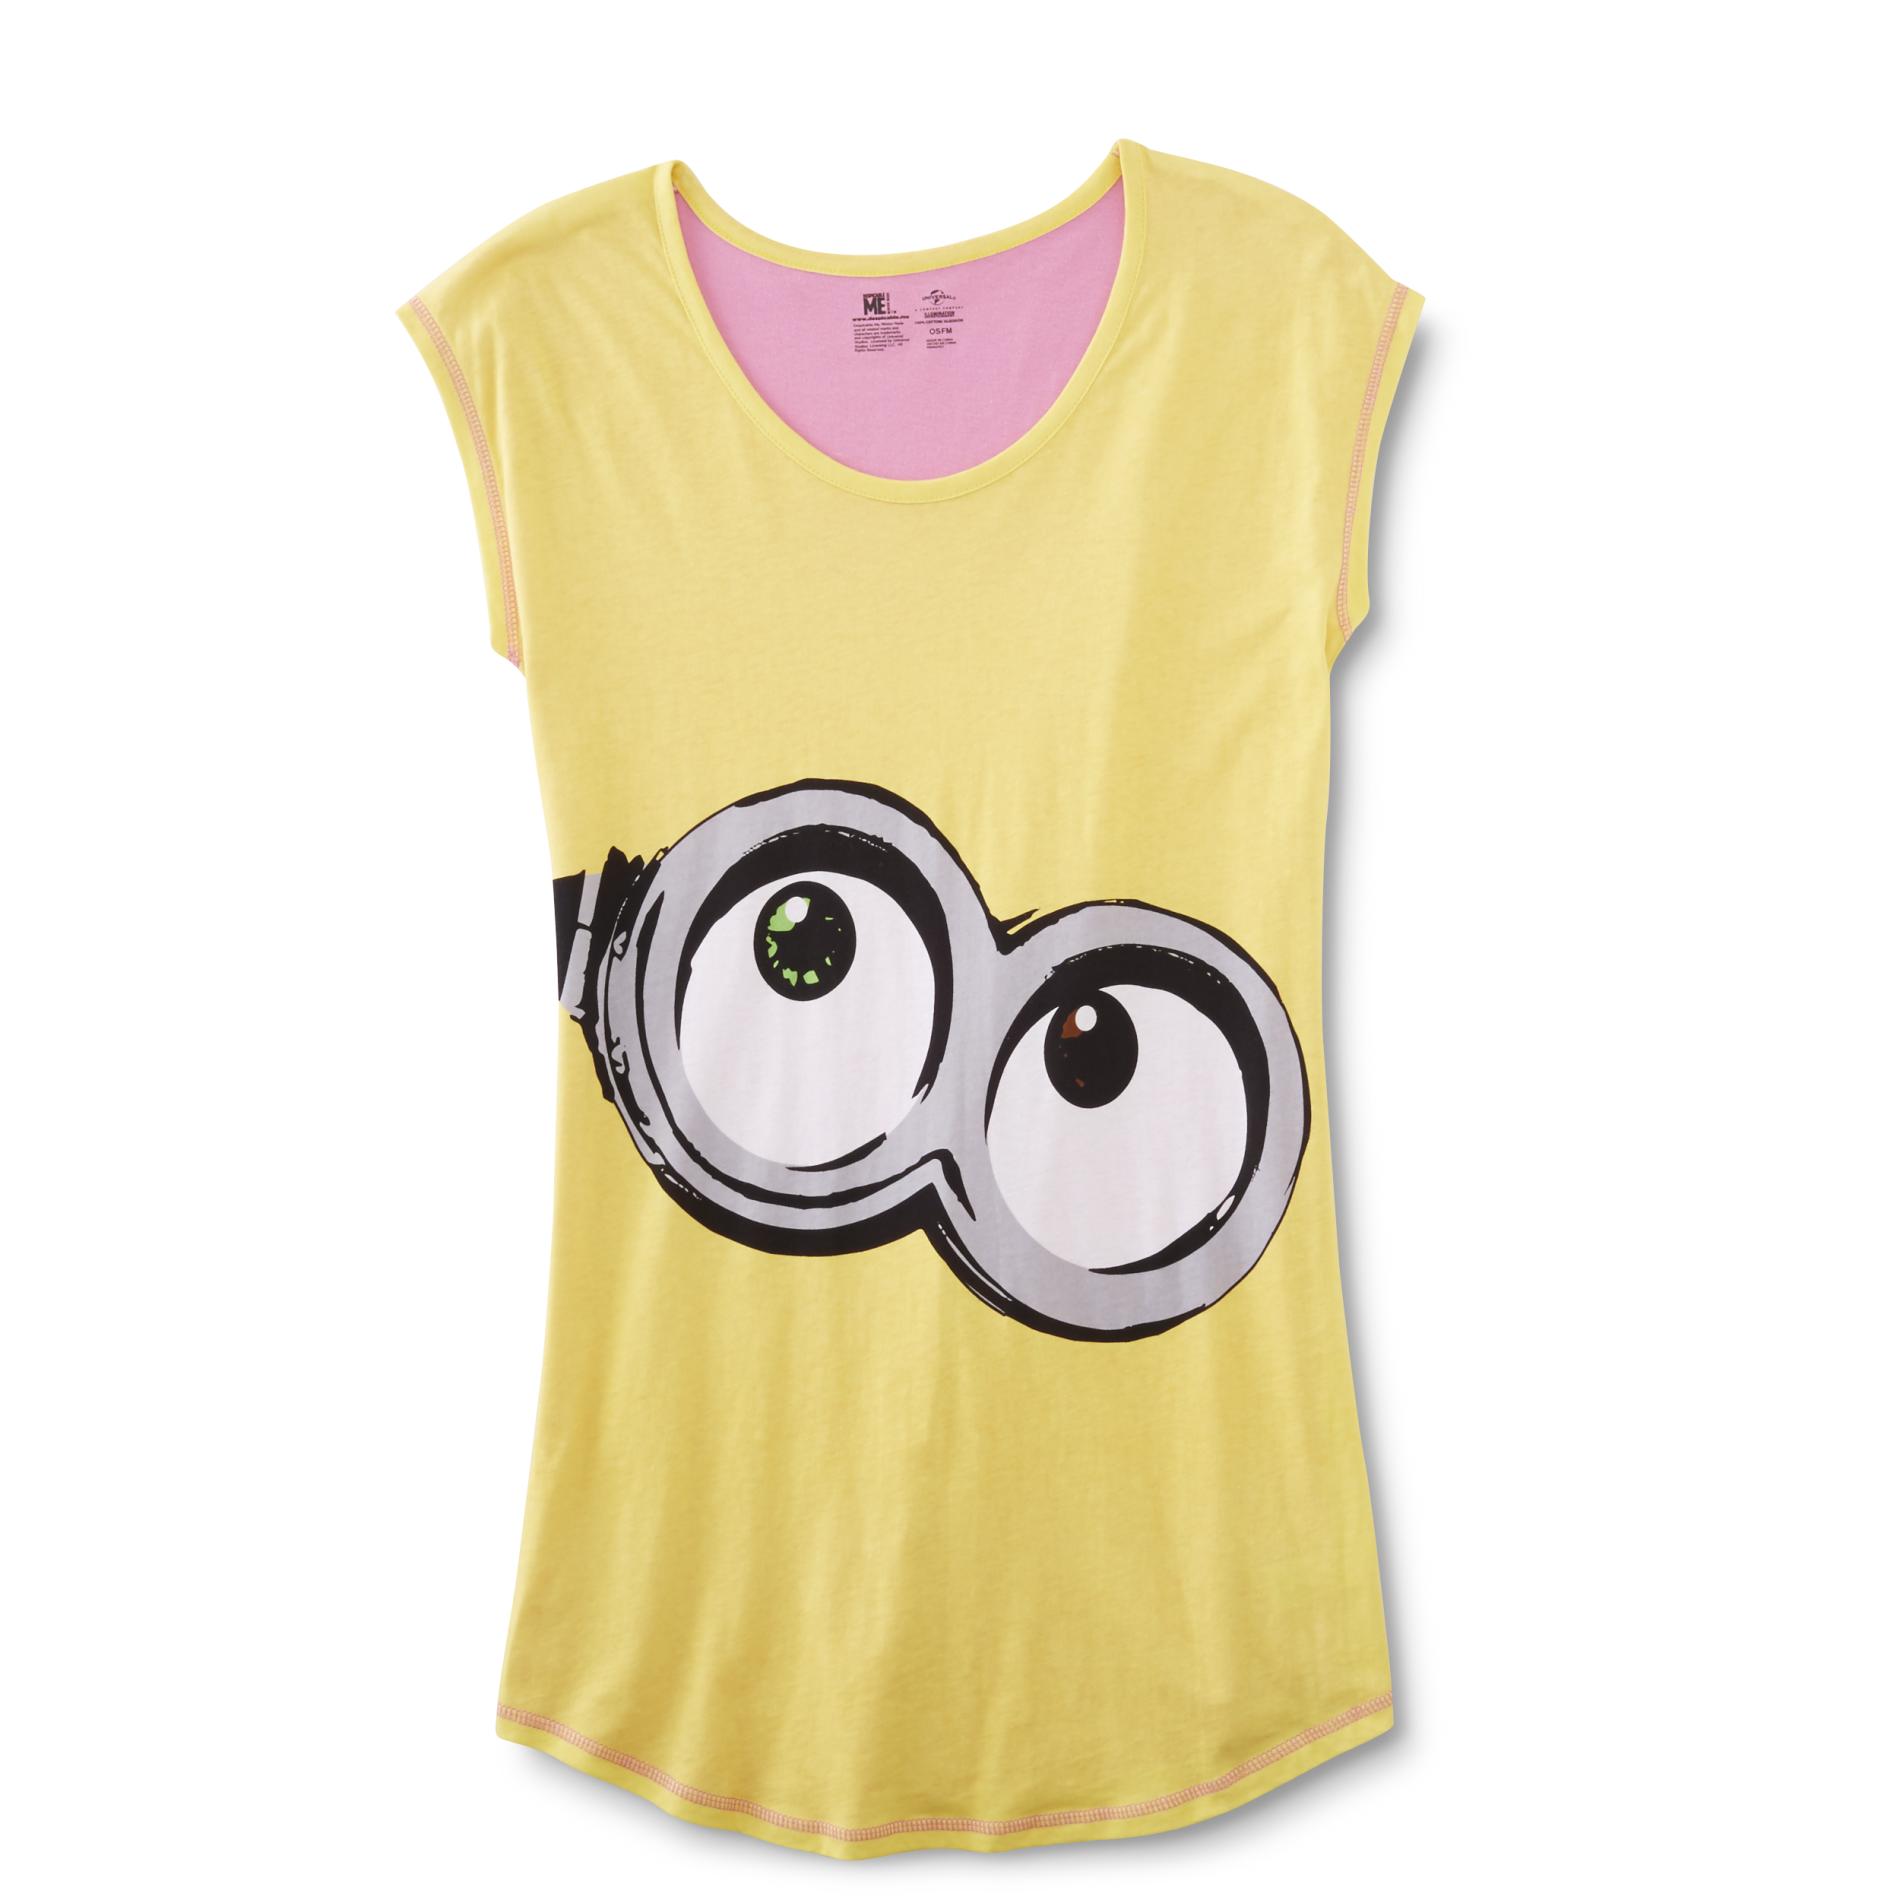 Illumination Entertainment Women's Plus Sleep Shirt - Minion